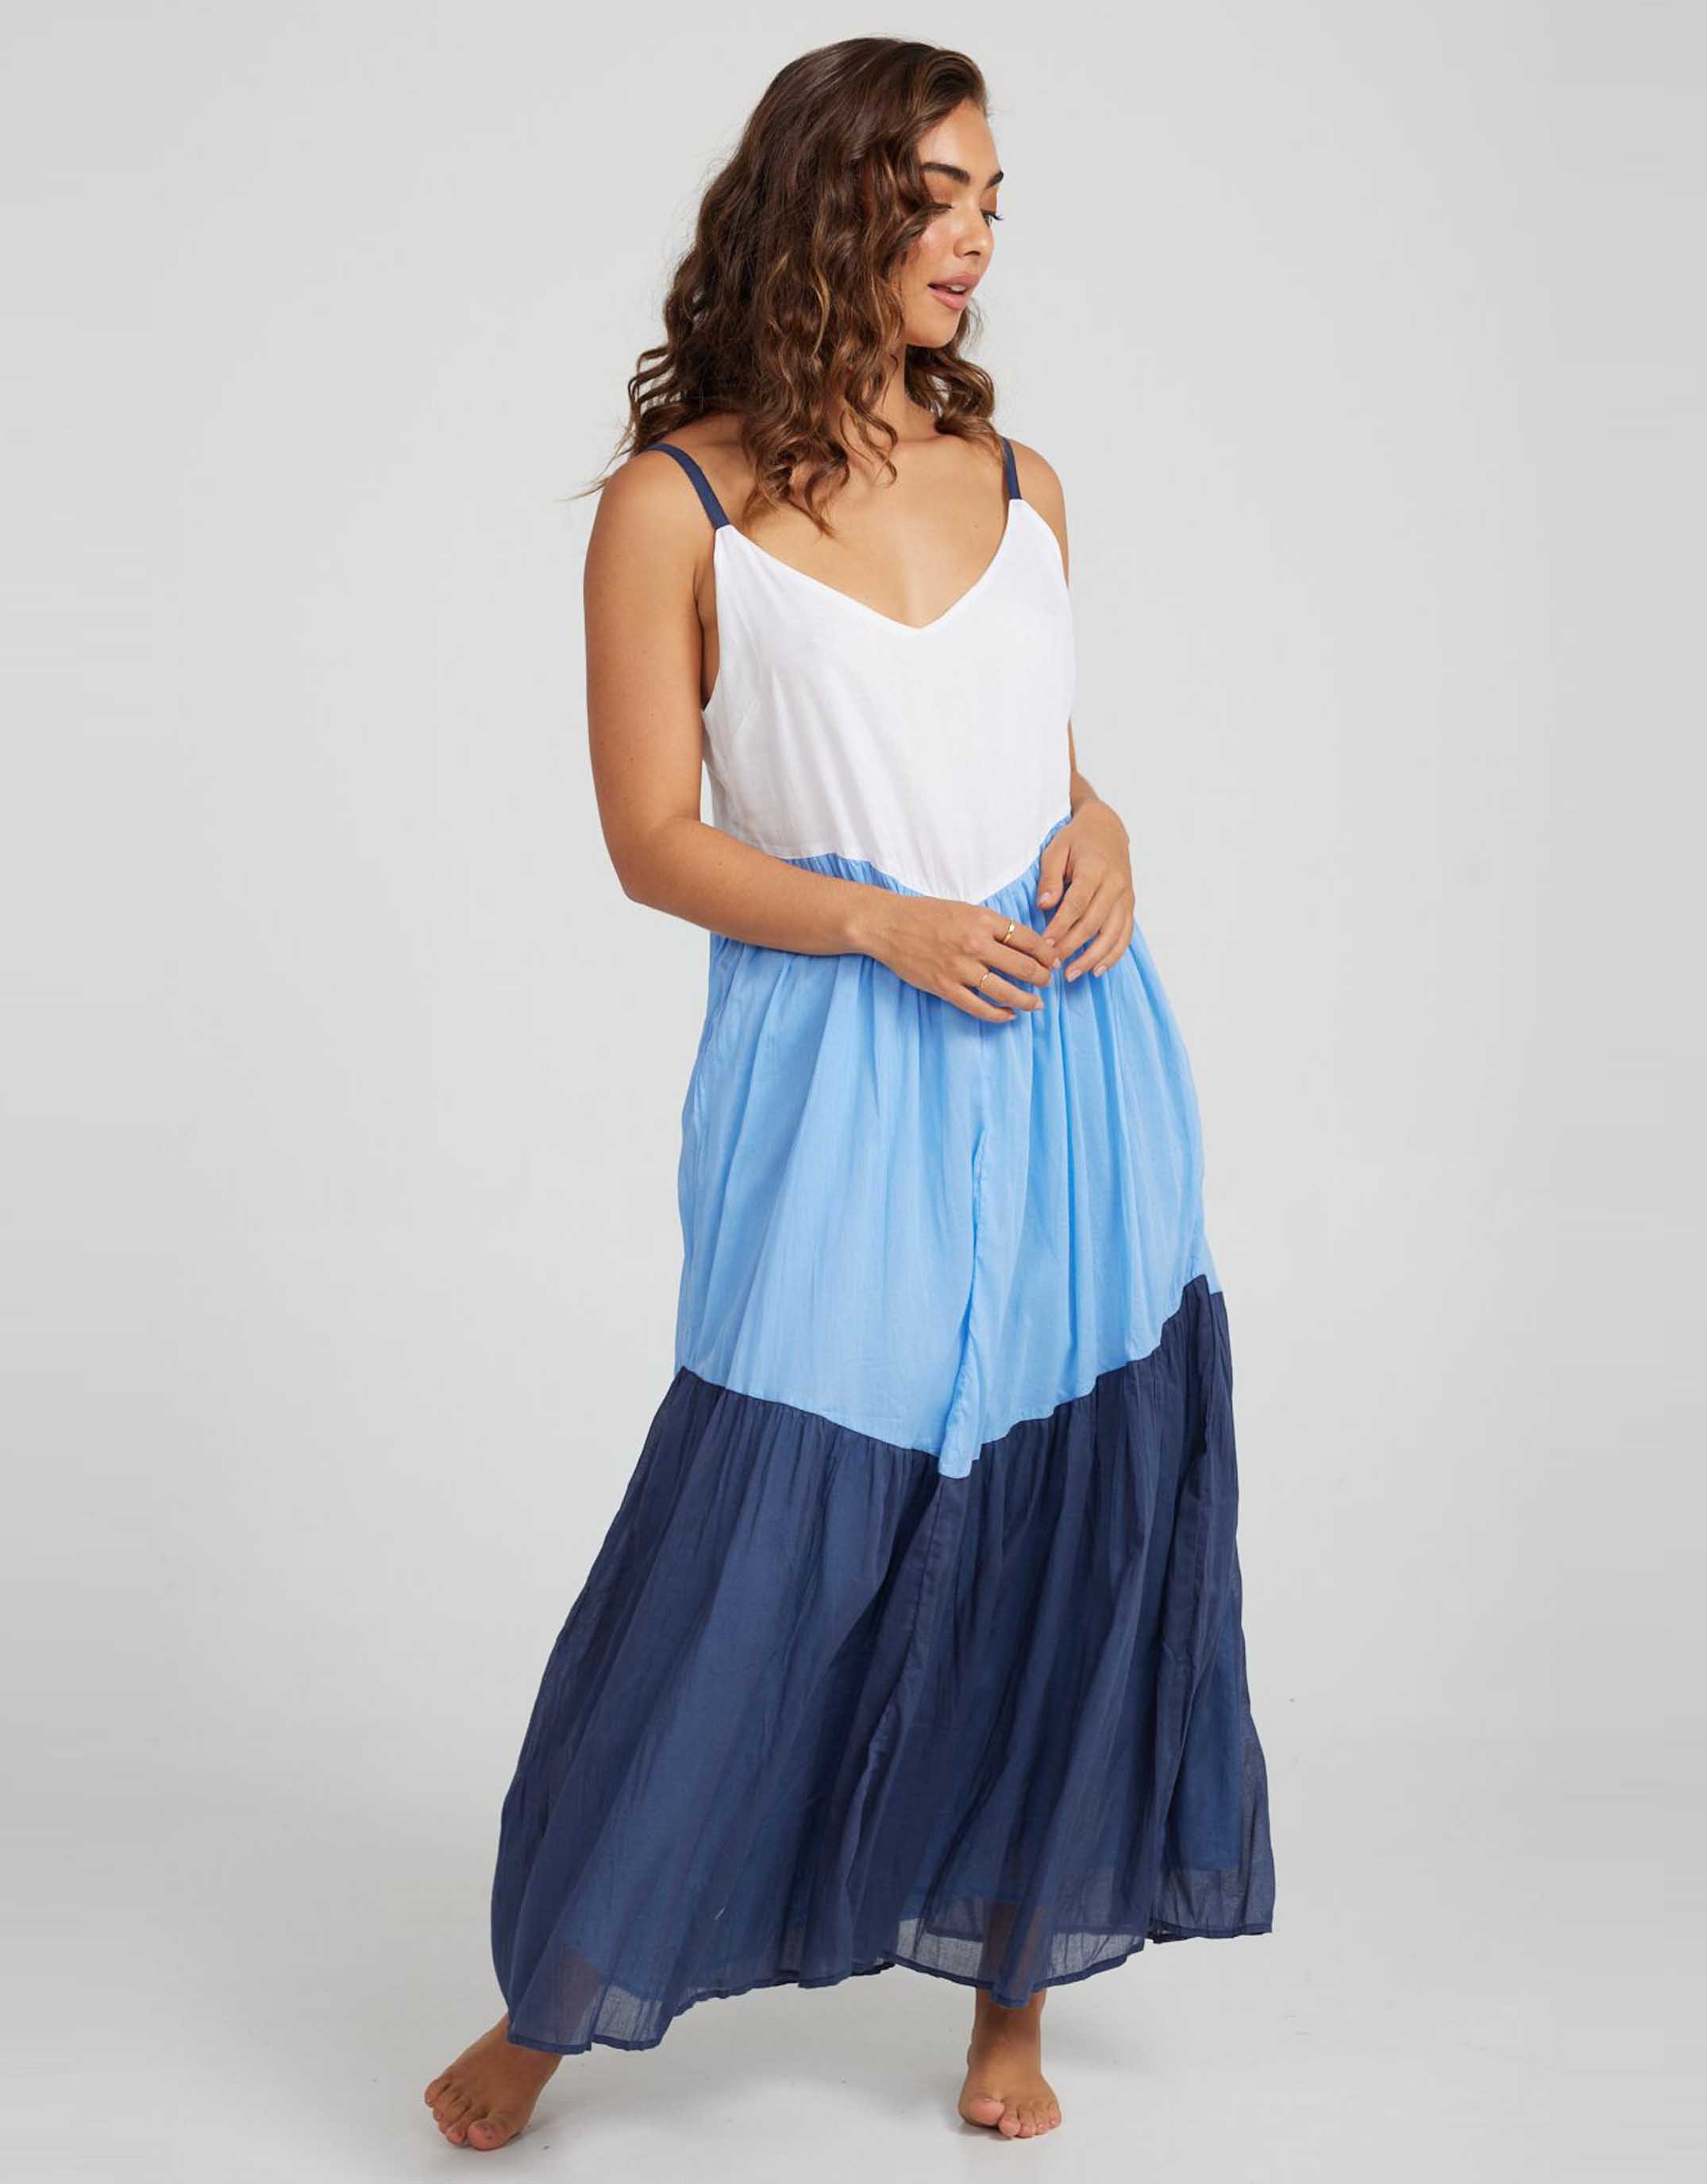 Mexicola Dress - White/Marina Blue/Navy